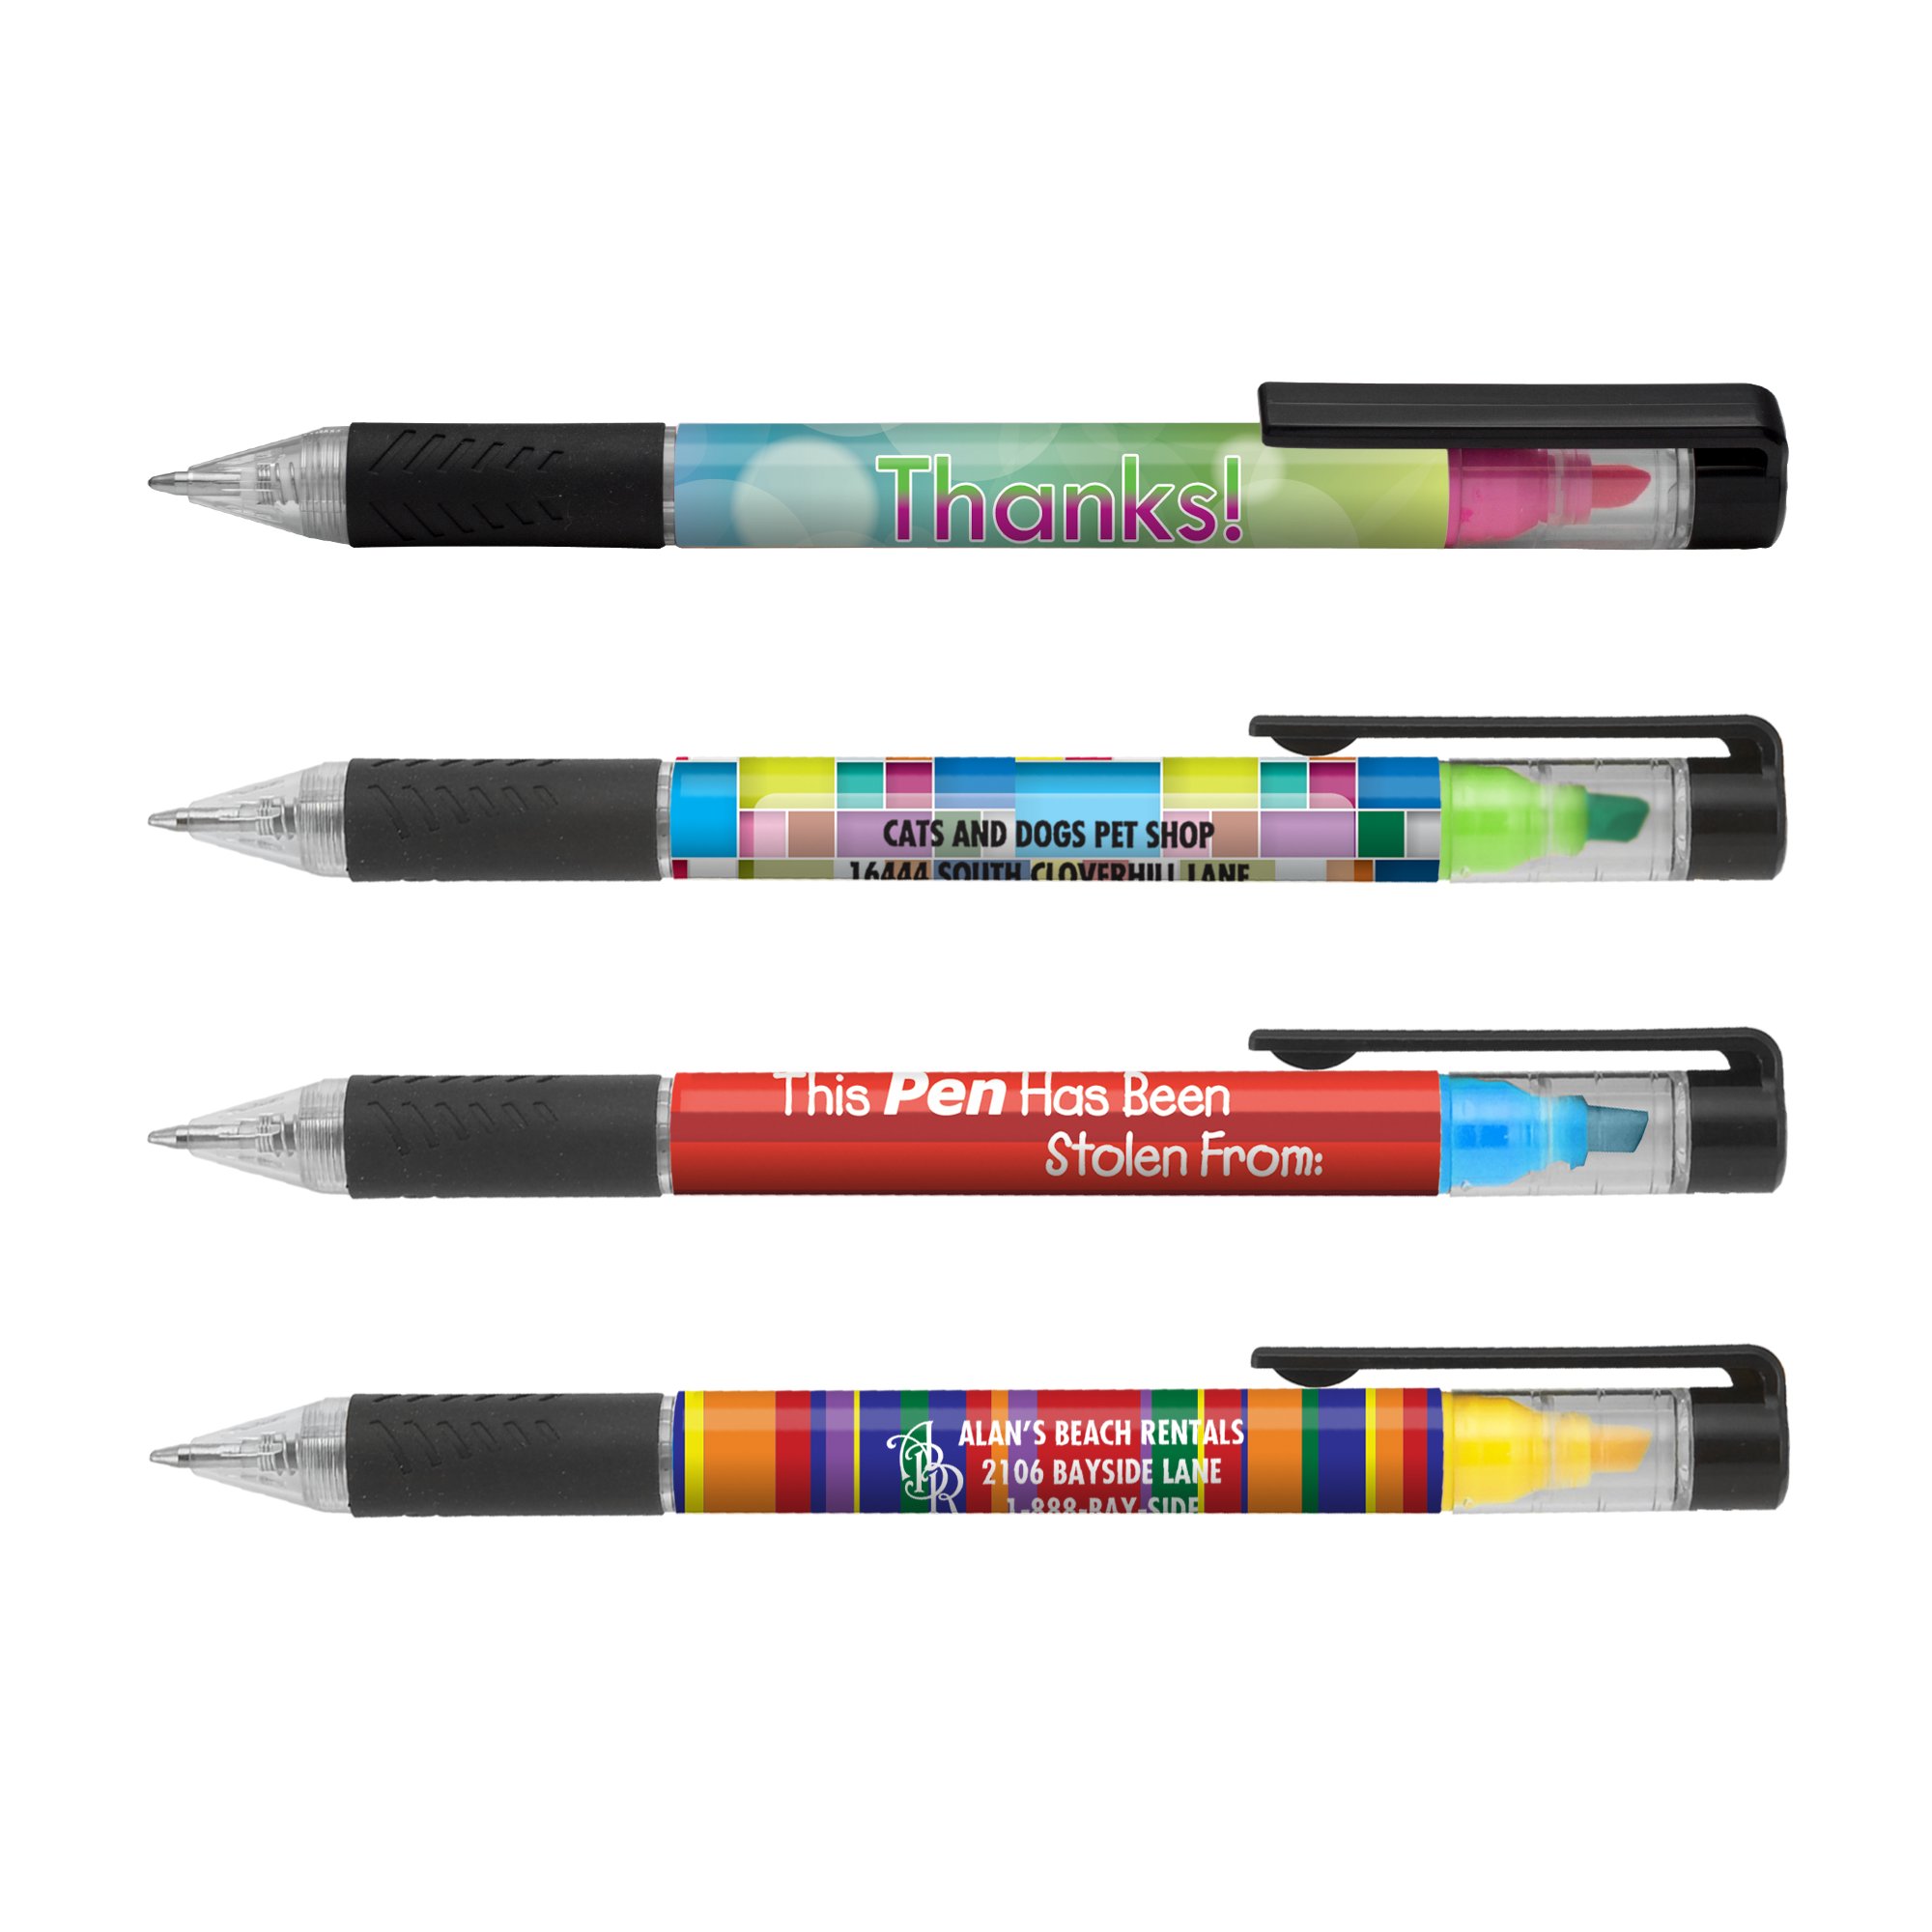 Penna in plastica colorata con evidenziatore integrato